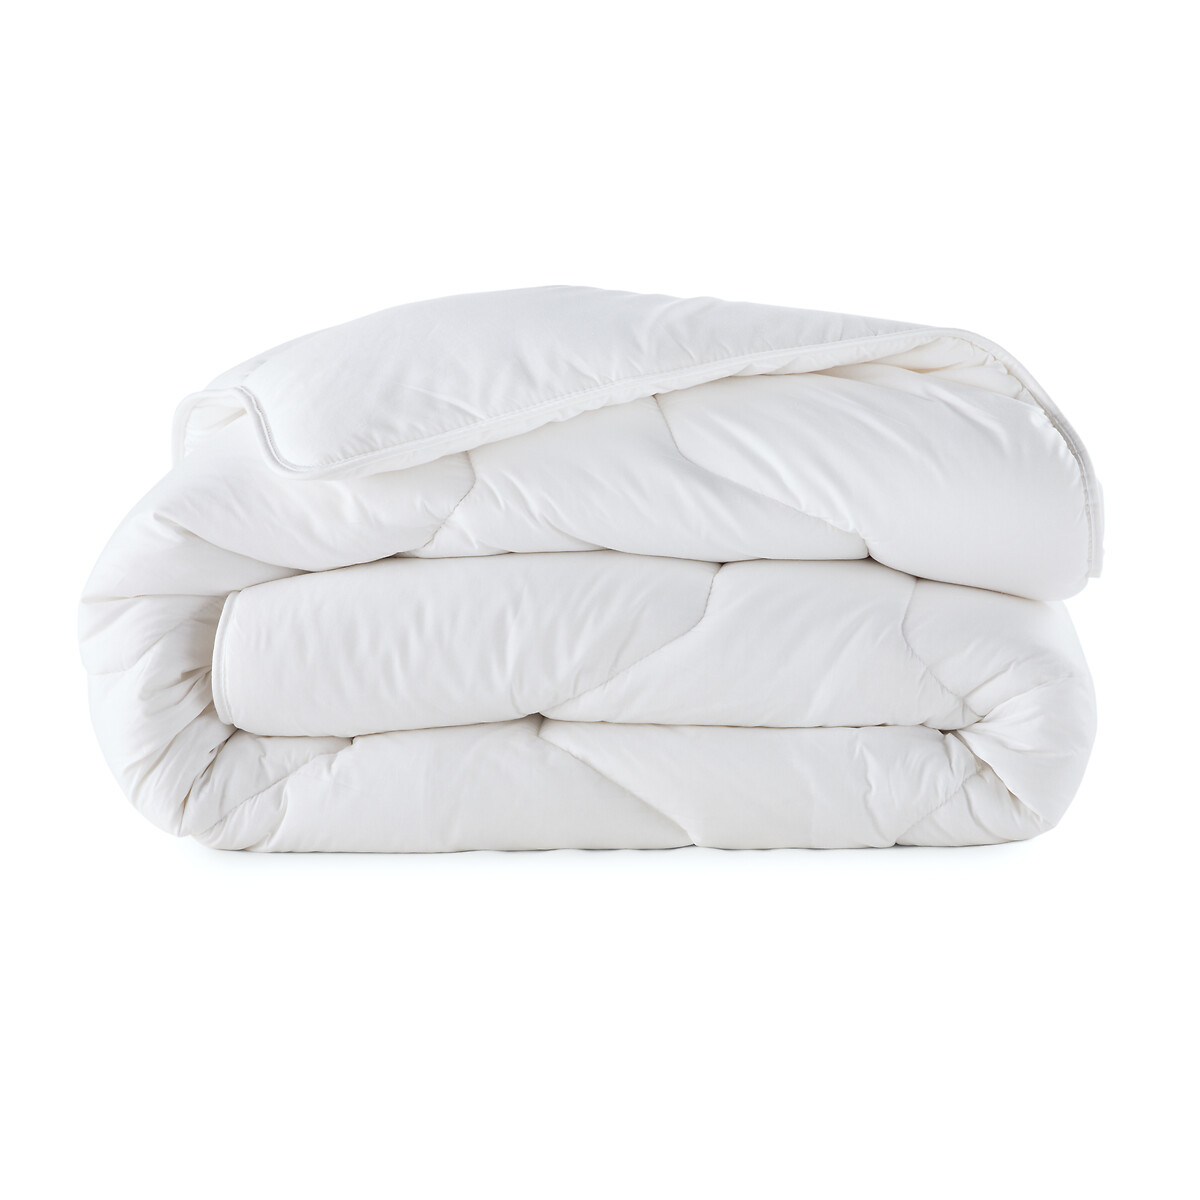 Одеяло La Redoute Синтетическое для летнего периода 260 x 240 см белый, размер 260 x 240 см - фото 2